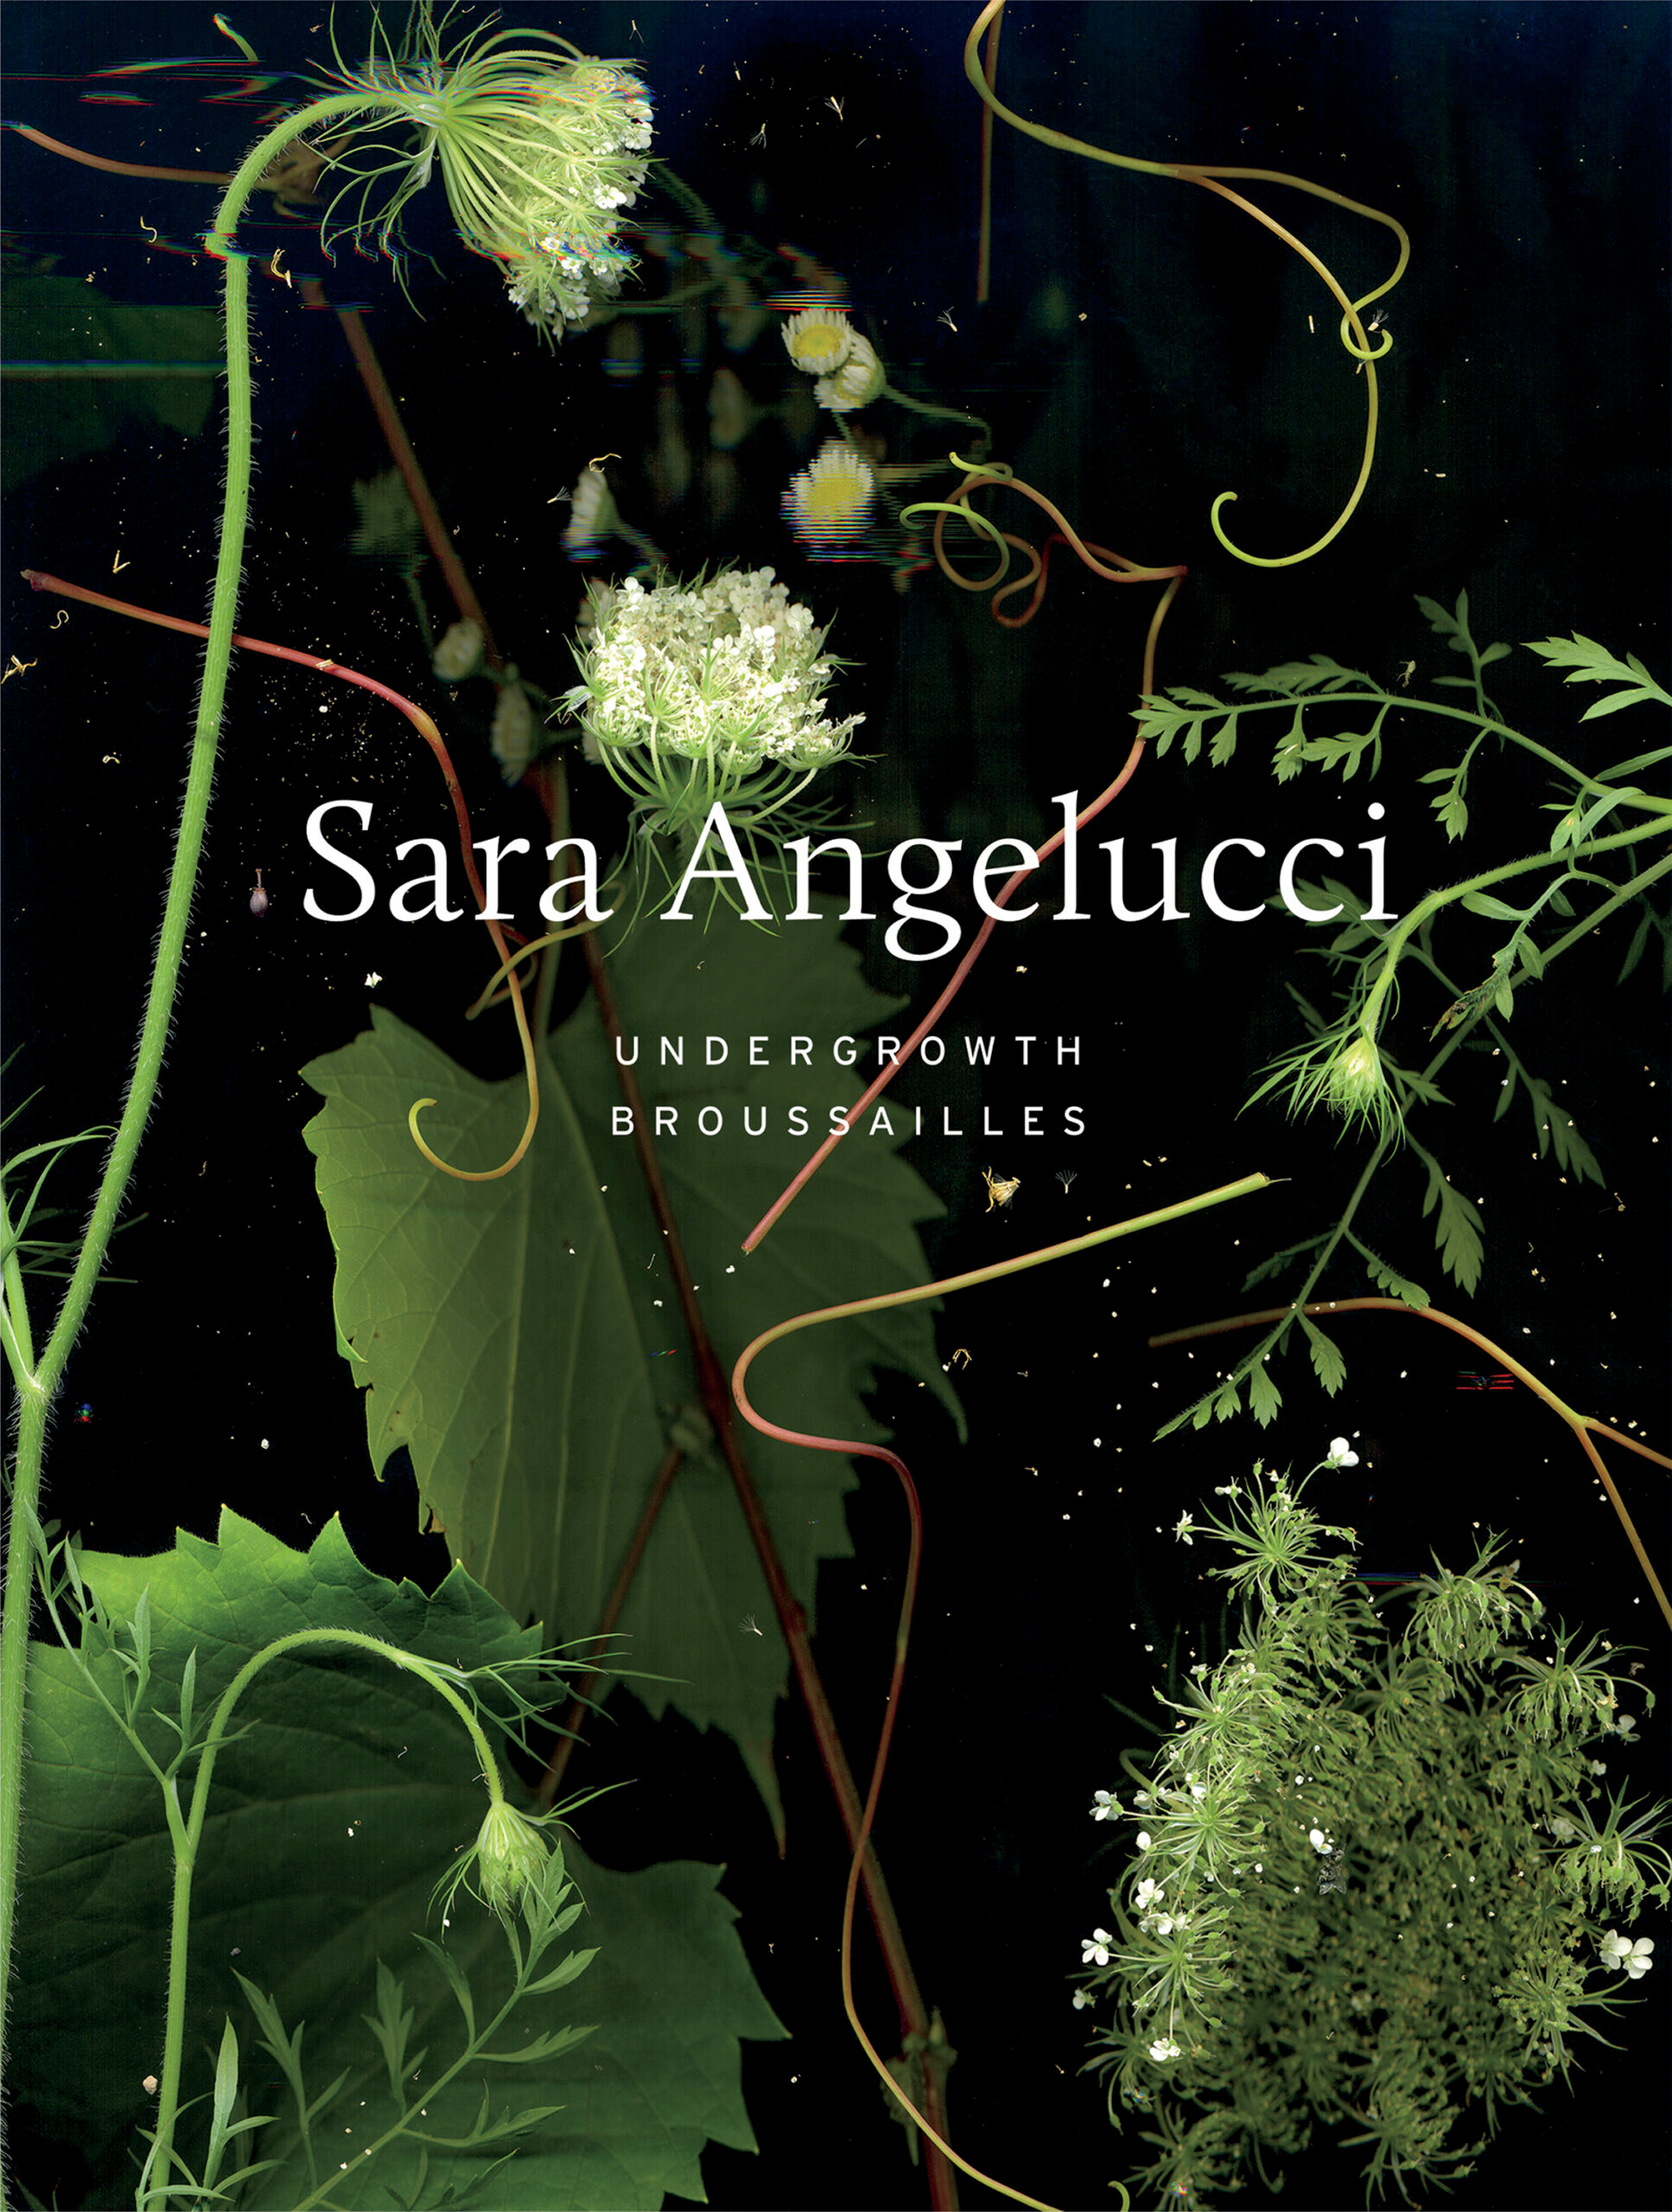     Sara Angelucci, Undergrowth / Broussailles, ECW Press, 2023

